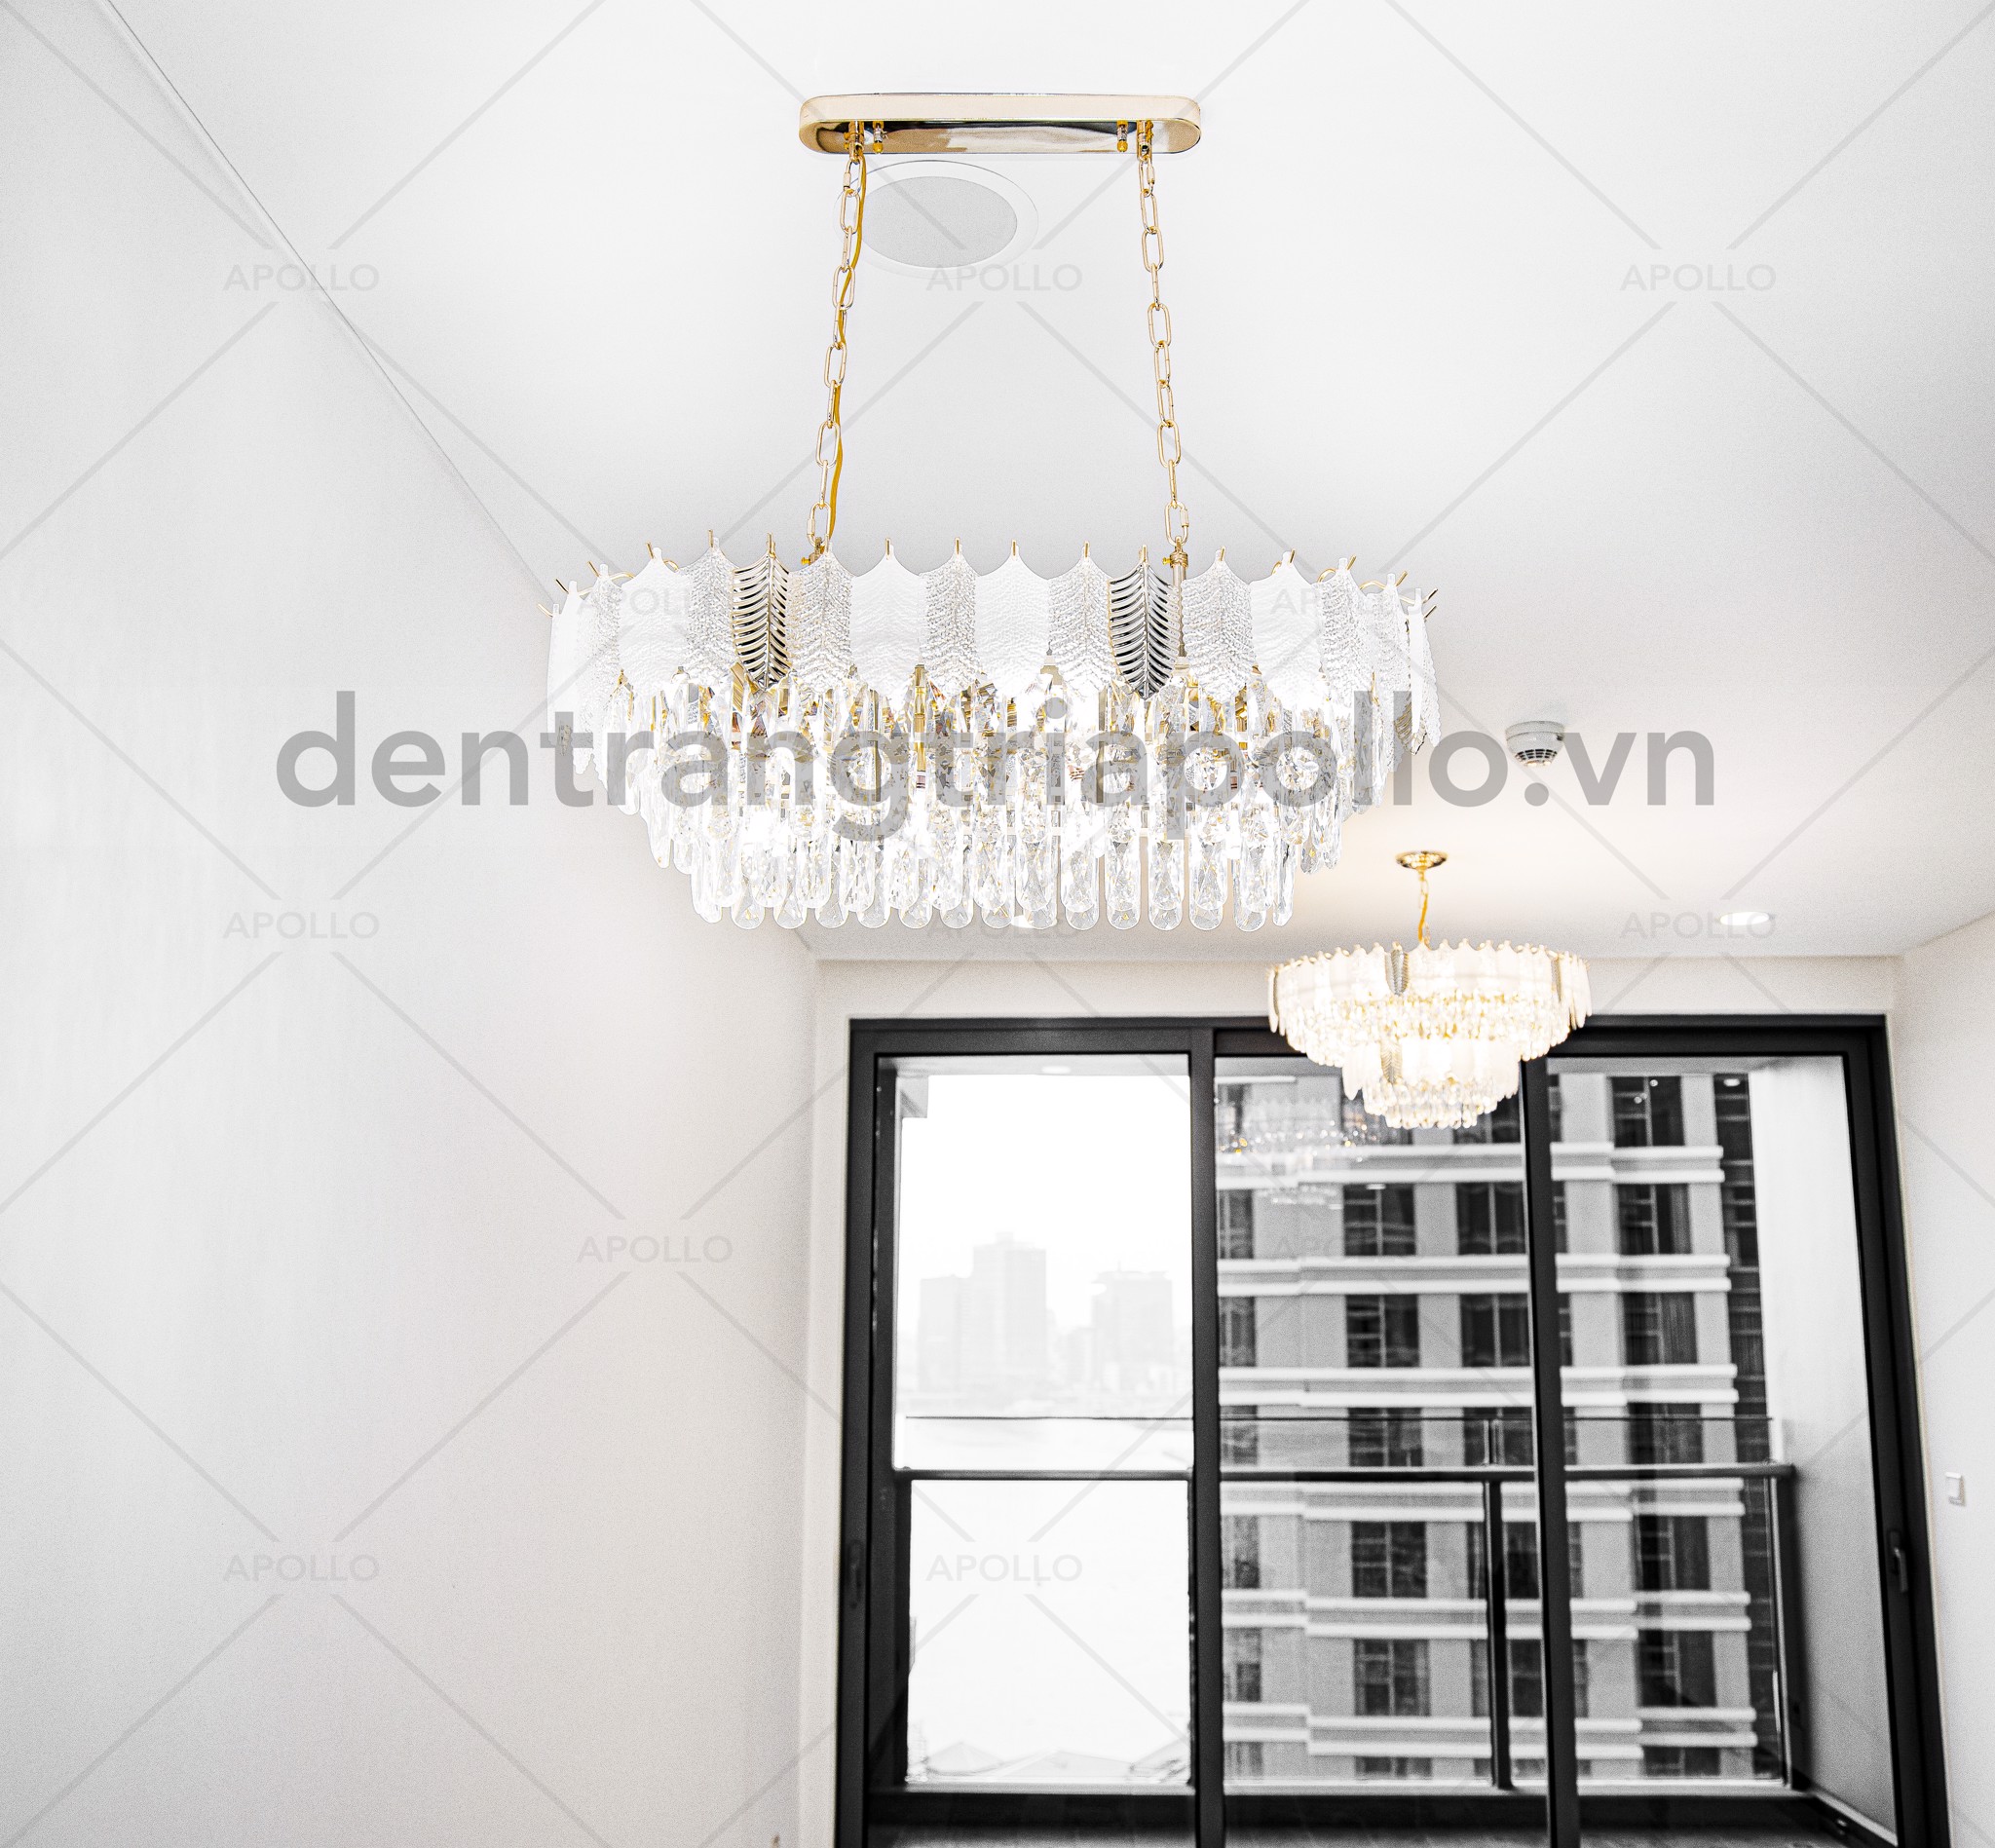 đèn chùm pha lê ngang trang trí bàn ăn căn hộ chung cư